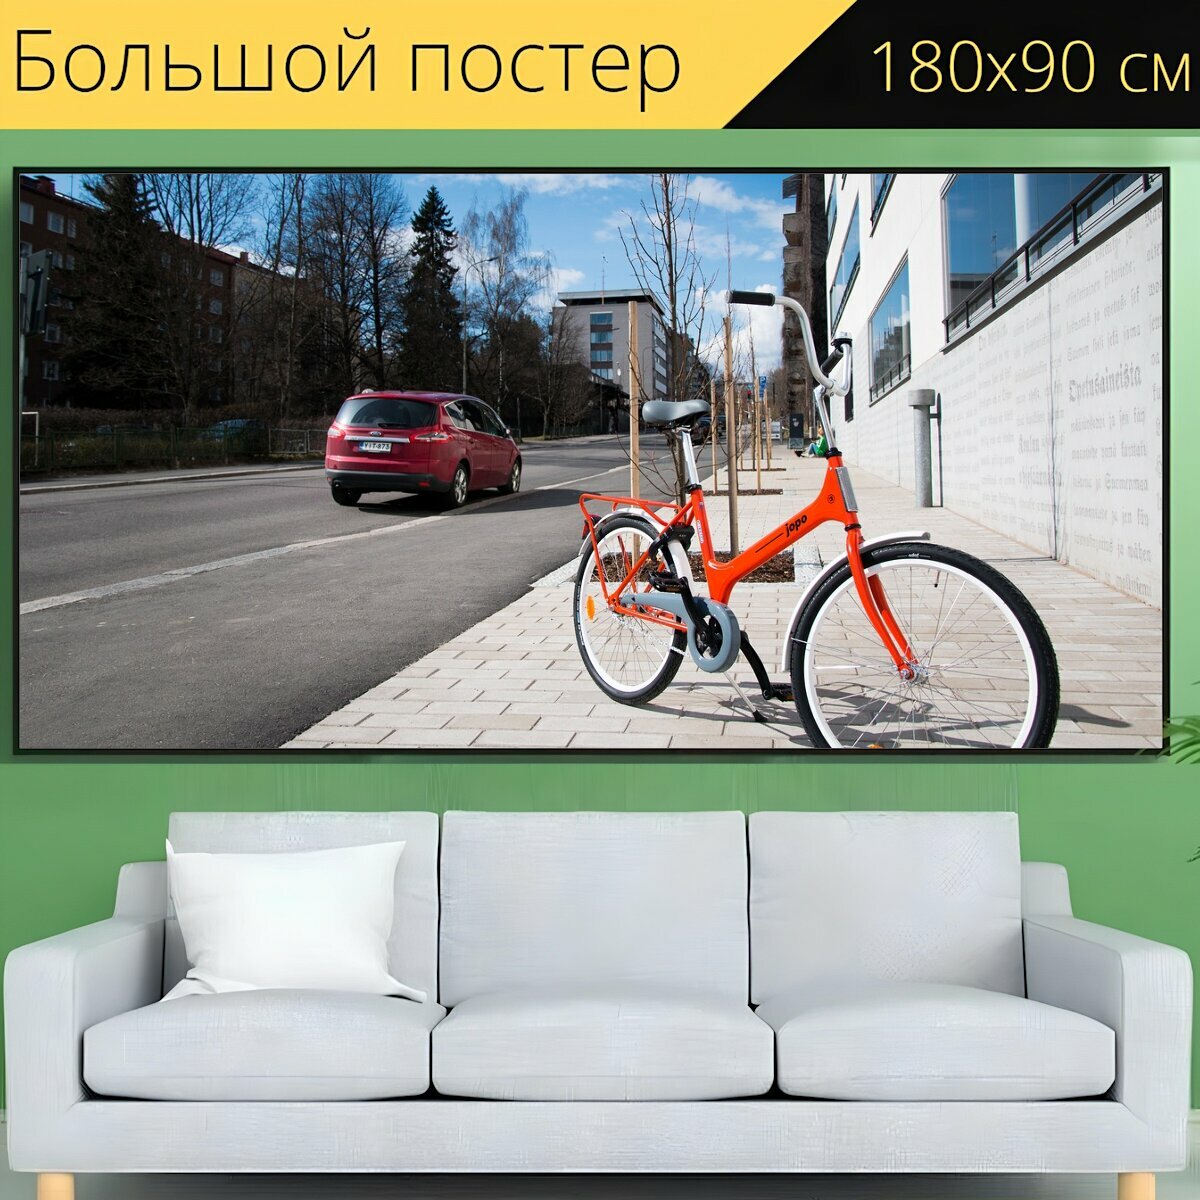 Большой постер "Велосипед, город, улица" 180 x 90 см. для интерьера